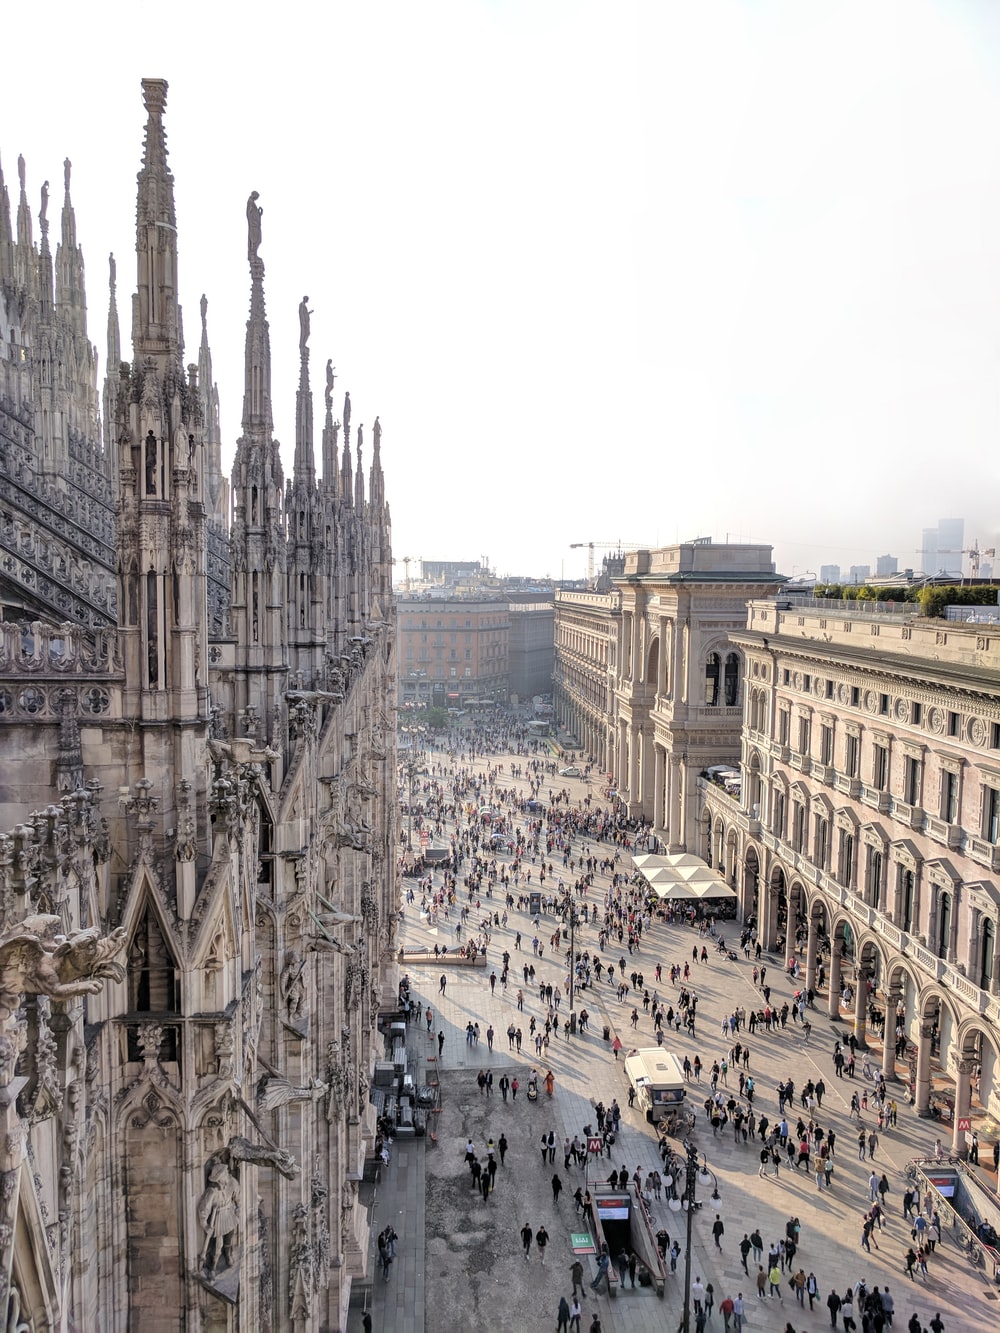 Milan Picture [Stunning!]. Download Free Image